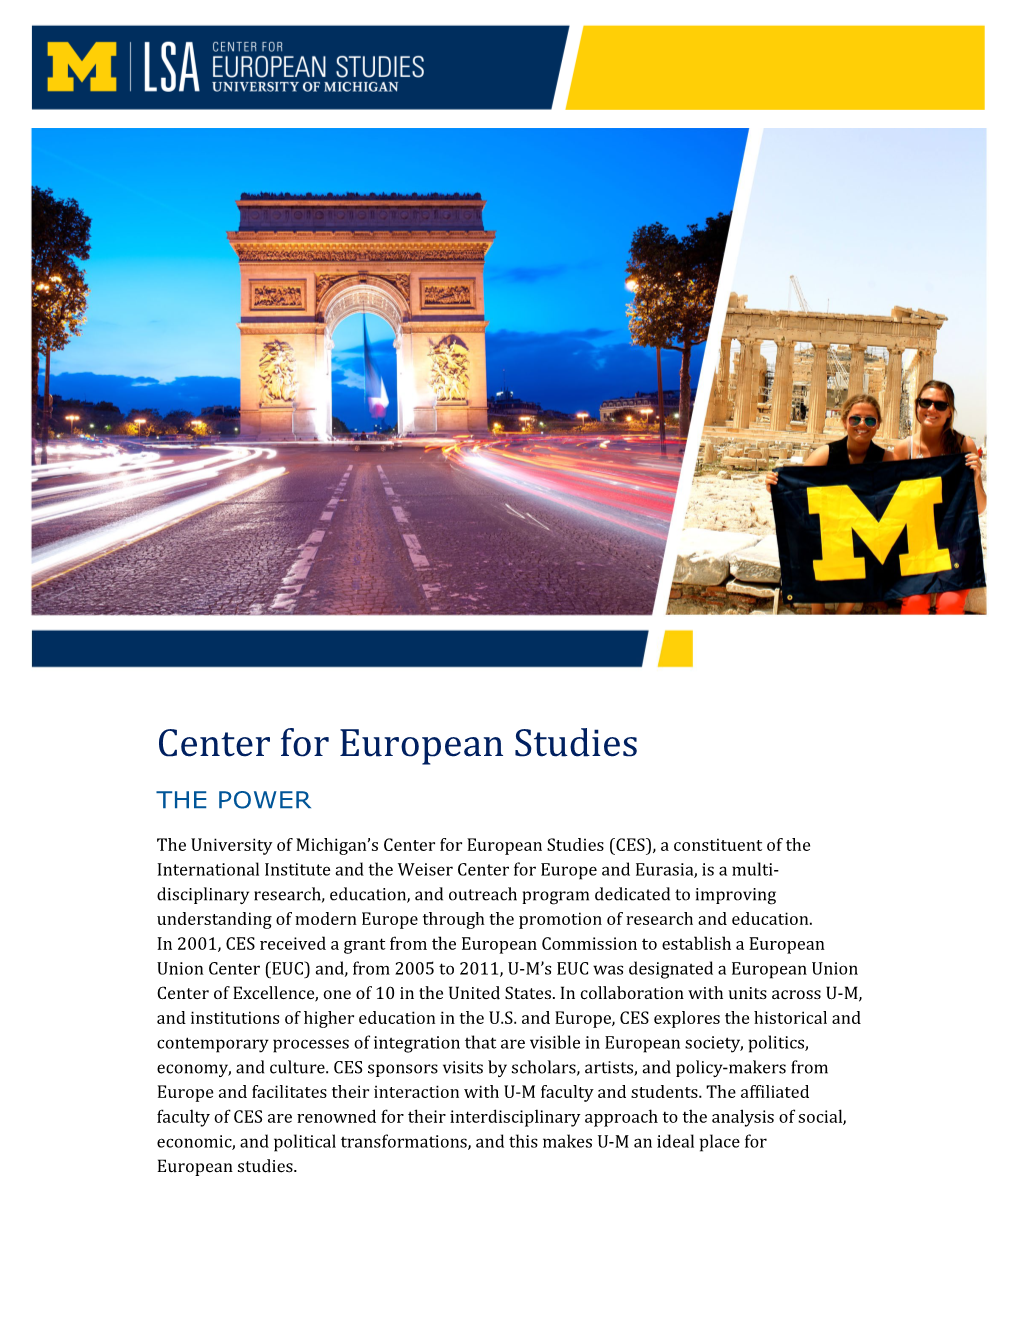 European Studies, Center